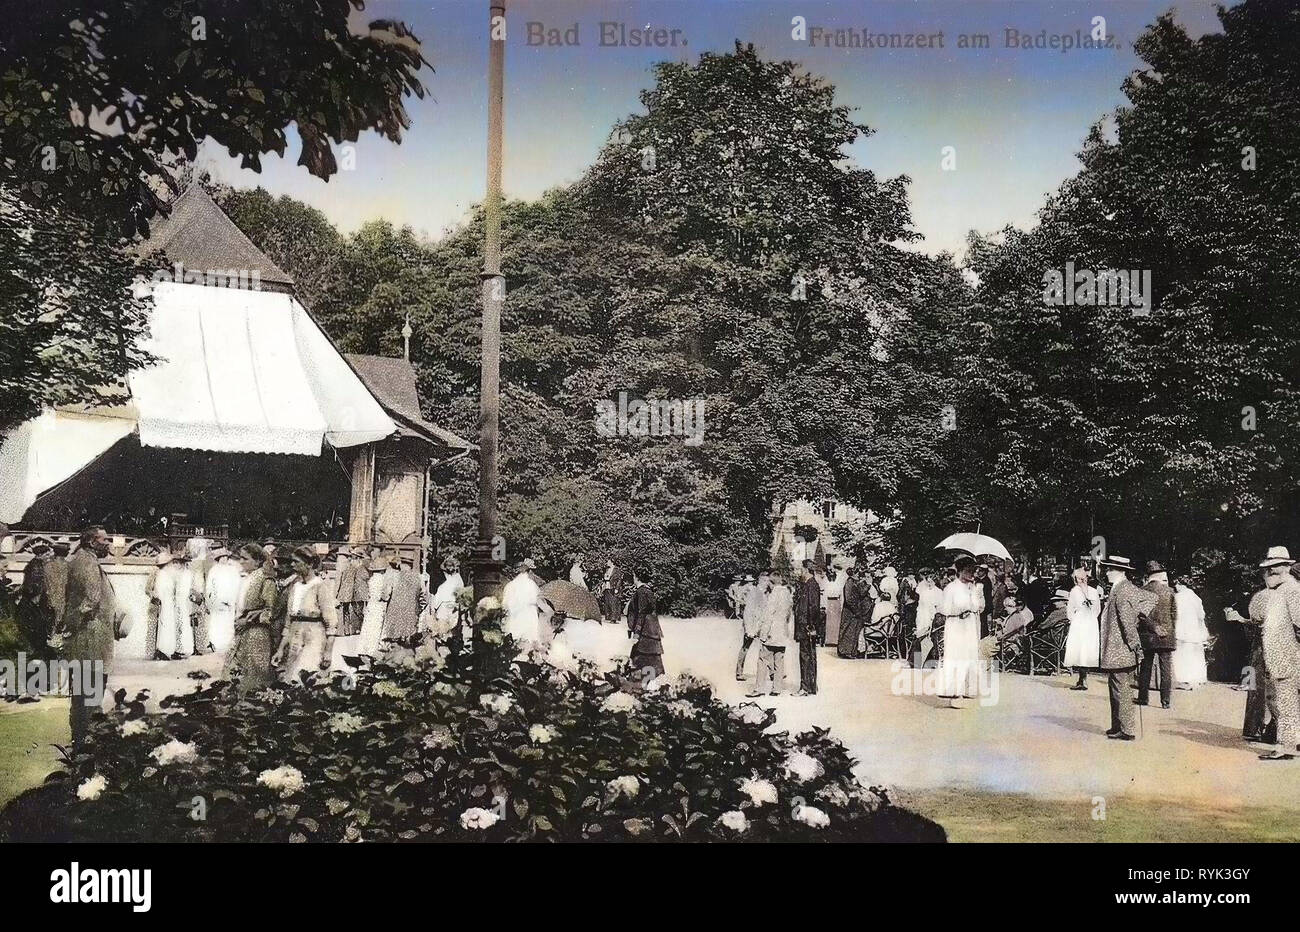 Concerts in Germany, Buildings in Bad Elster, 1914, Vogtlandkreis, Bad Elster, Badeplatz mit Frühkonzert Stock Photo